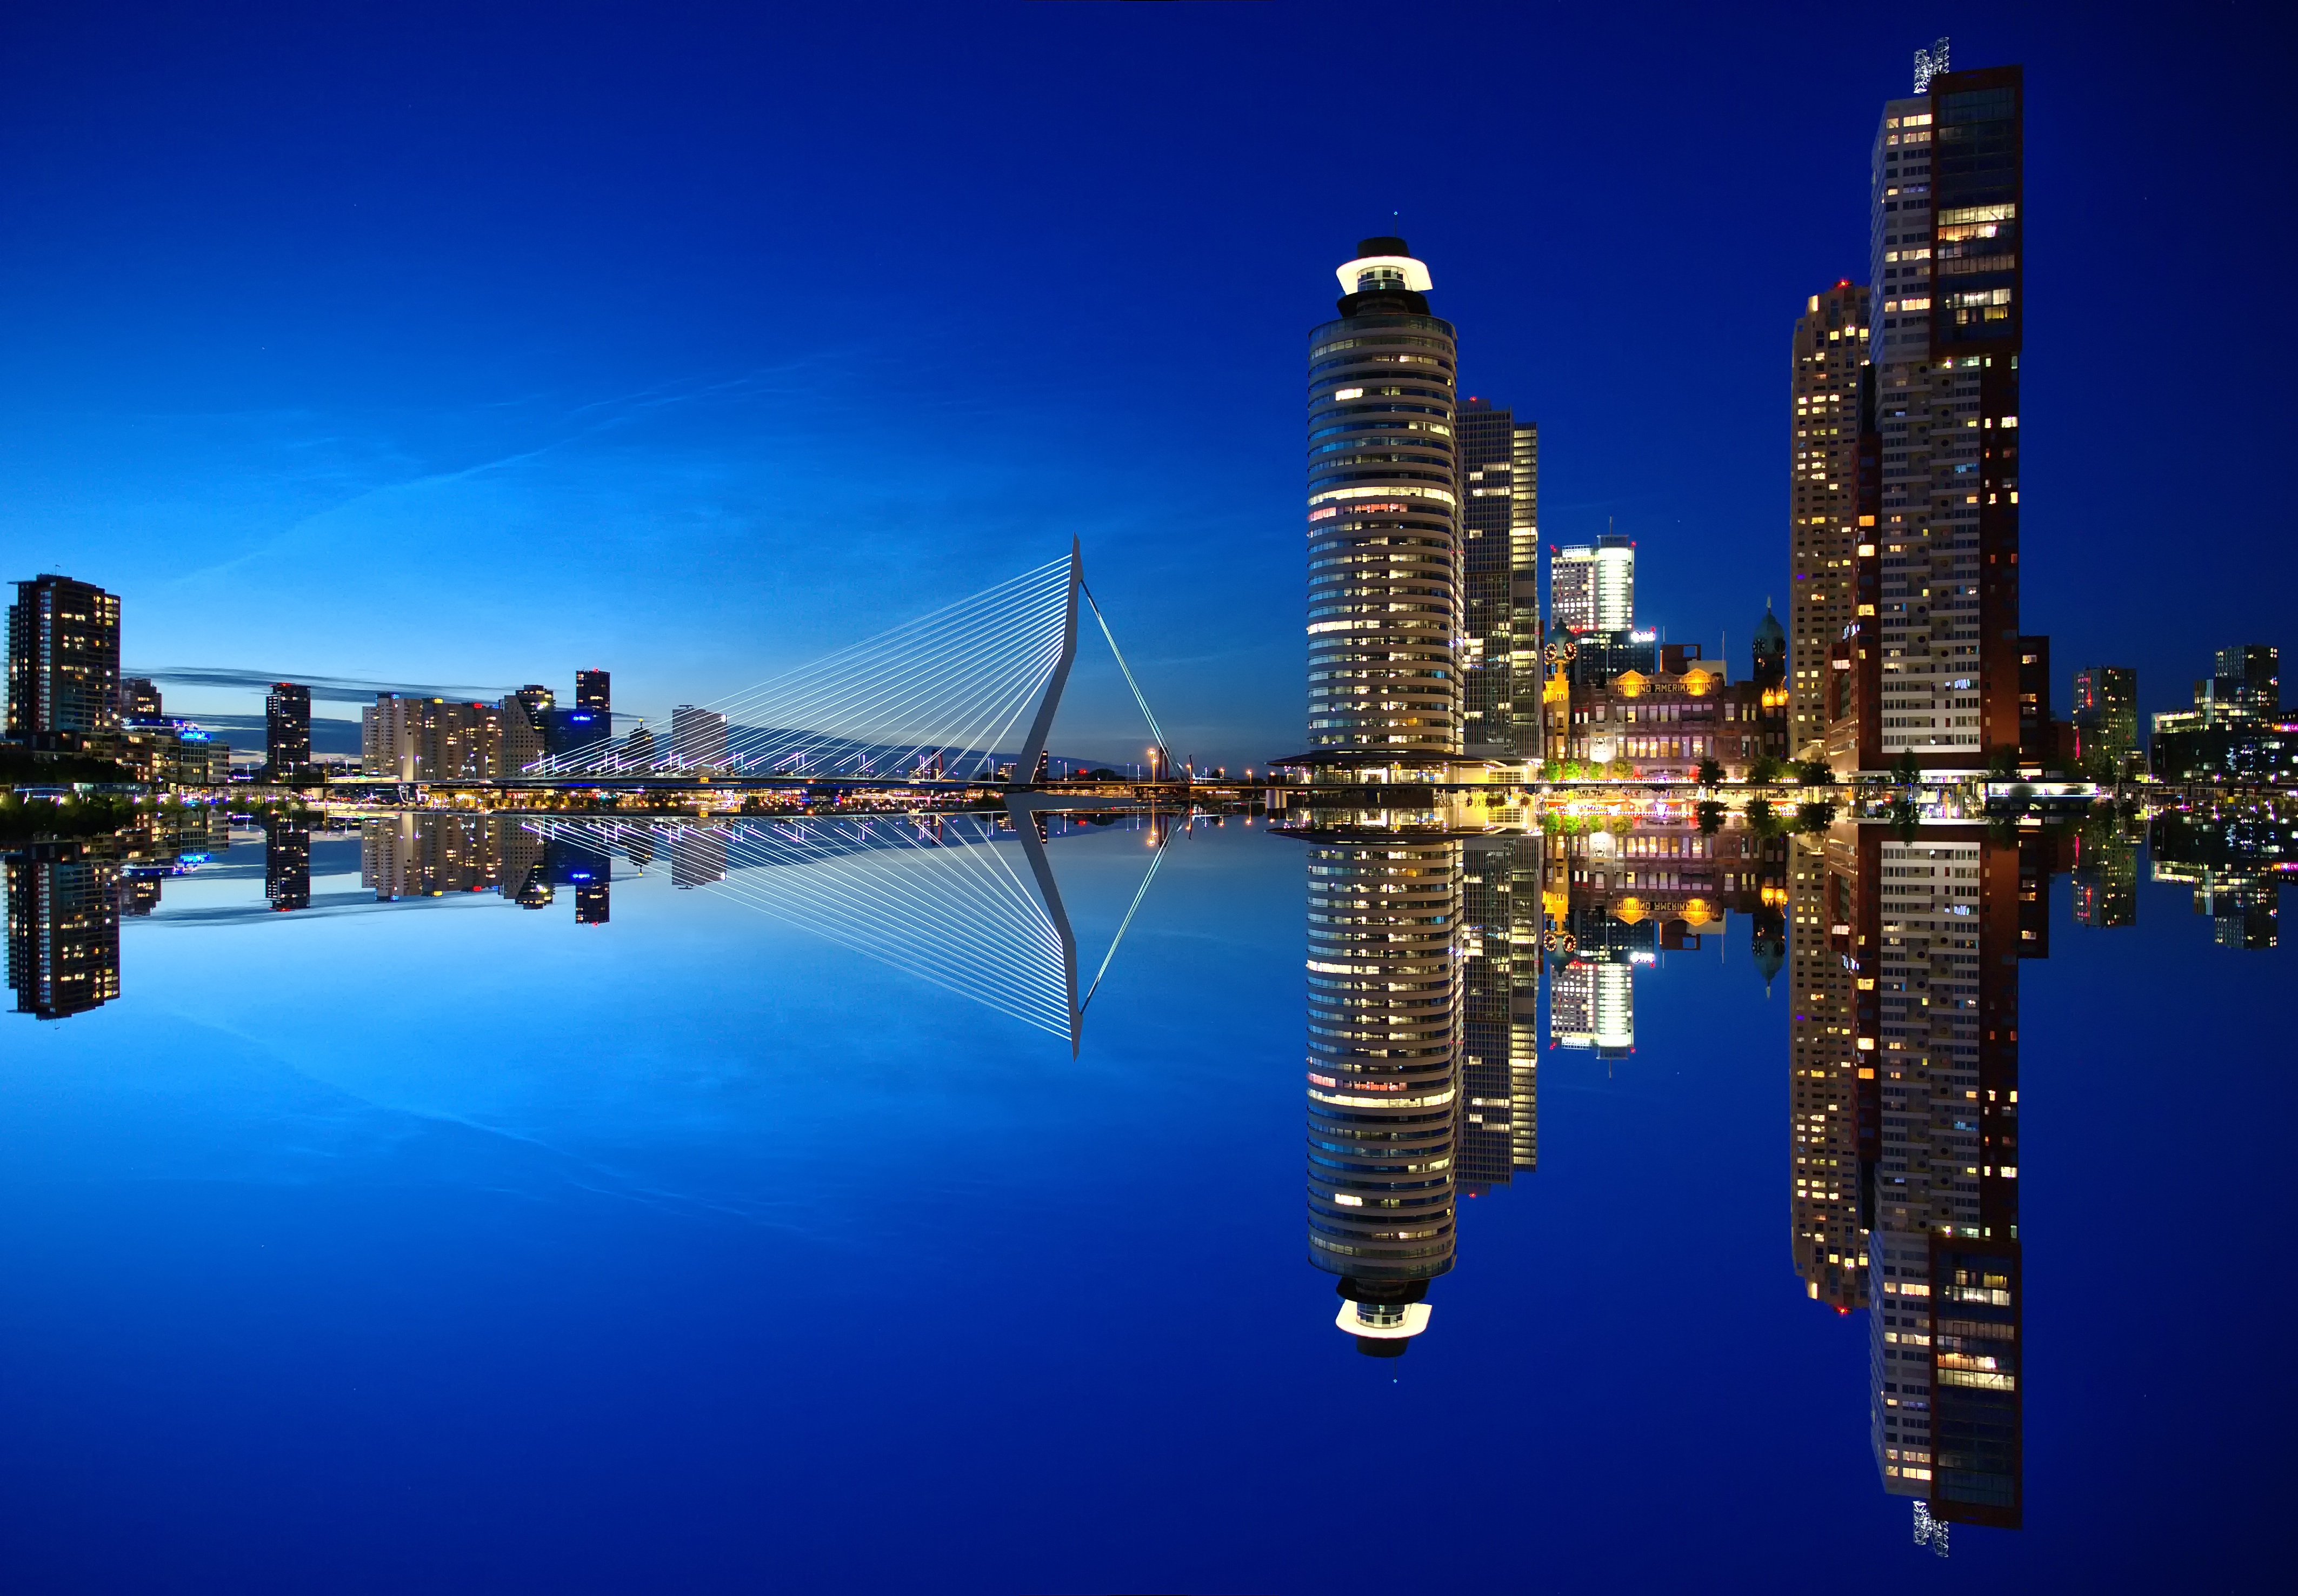 An evening in Rotterdam